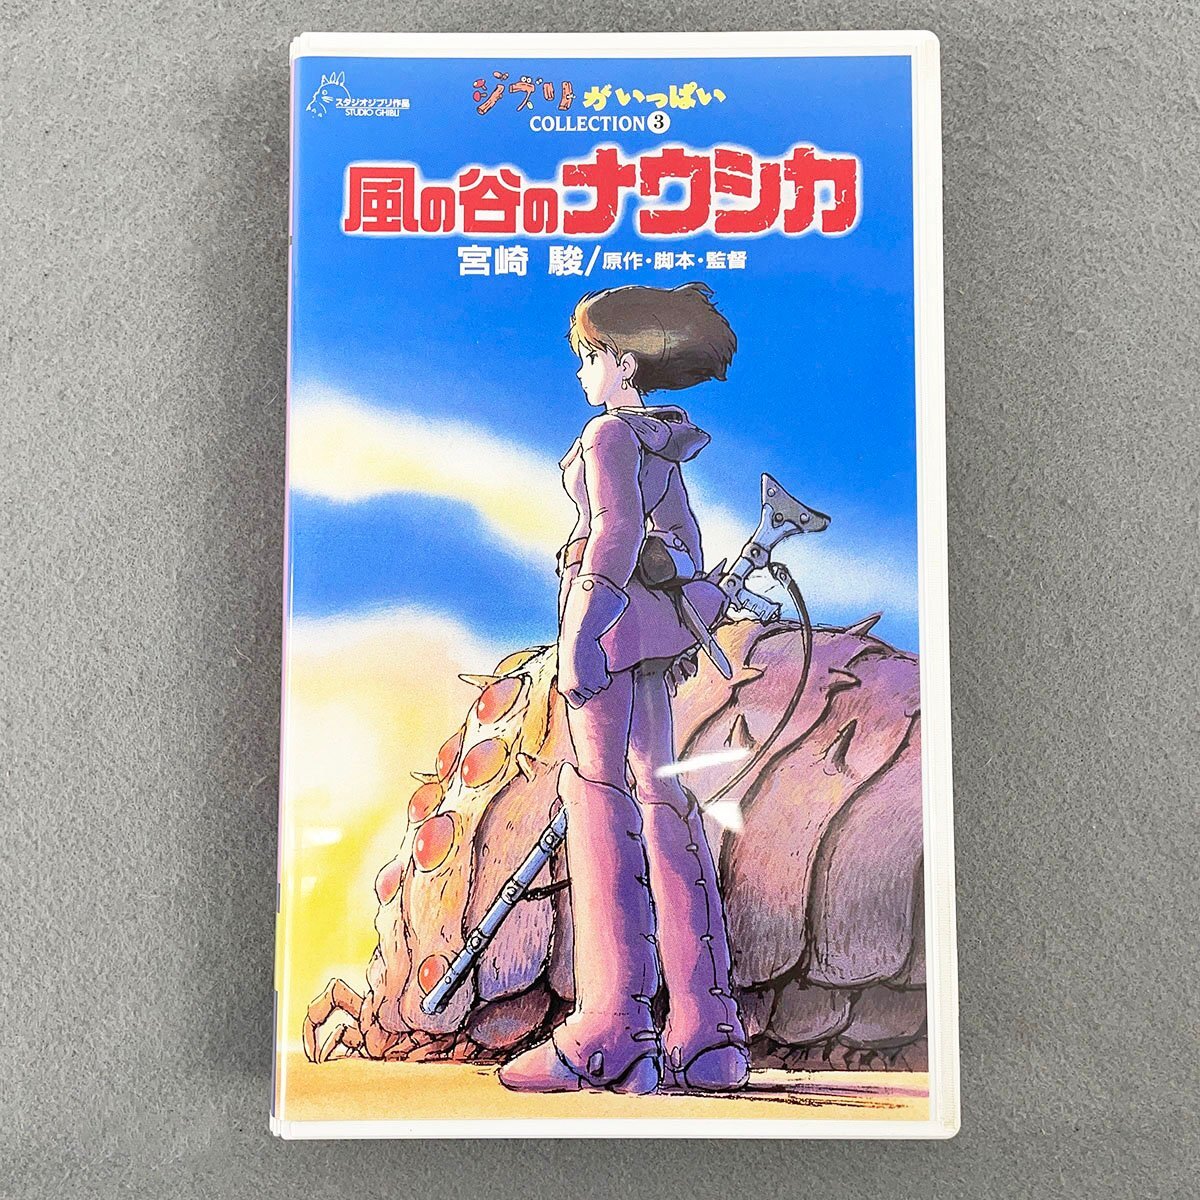 VHS 風の谷のナウシカ 宮崎駿 ジブリがいっぱいコレクション3 [F6107]の画像1